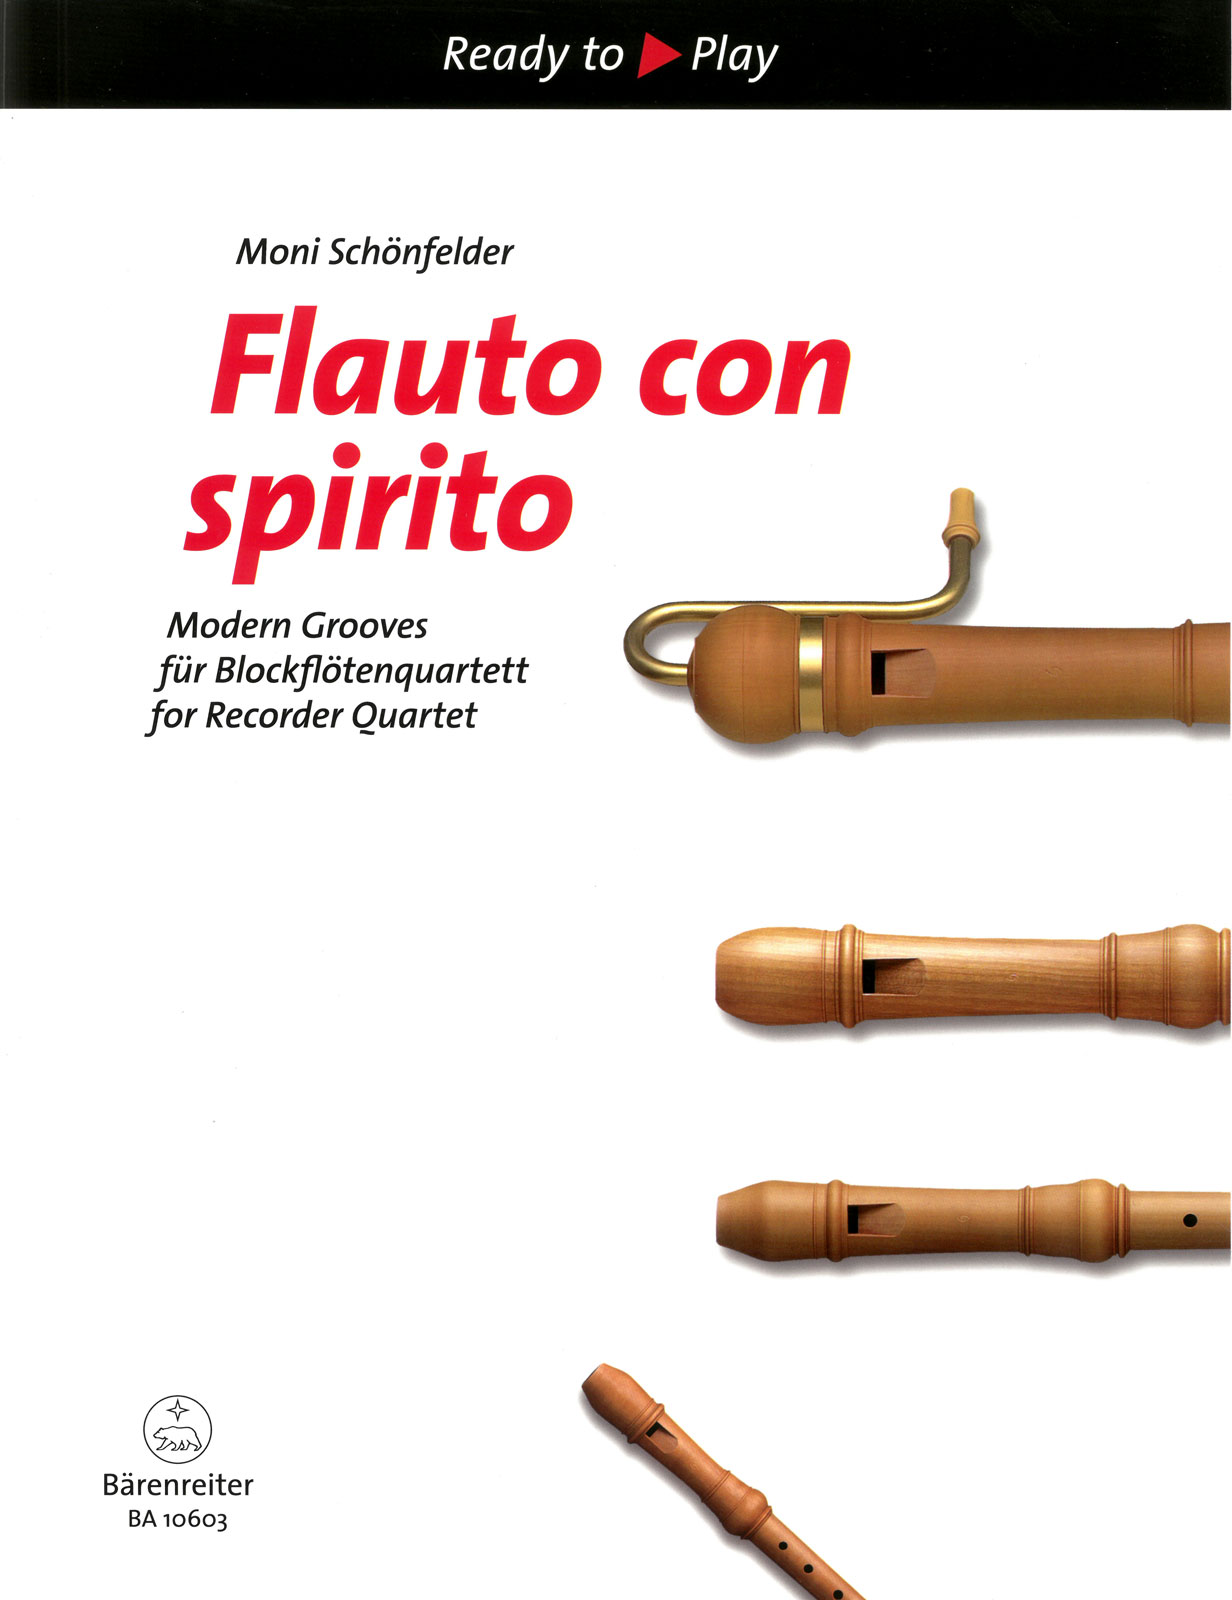 Flauto con spirito- Modern Grooves für Blockflötenquartett